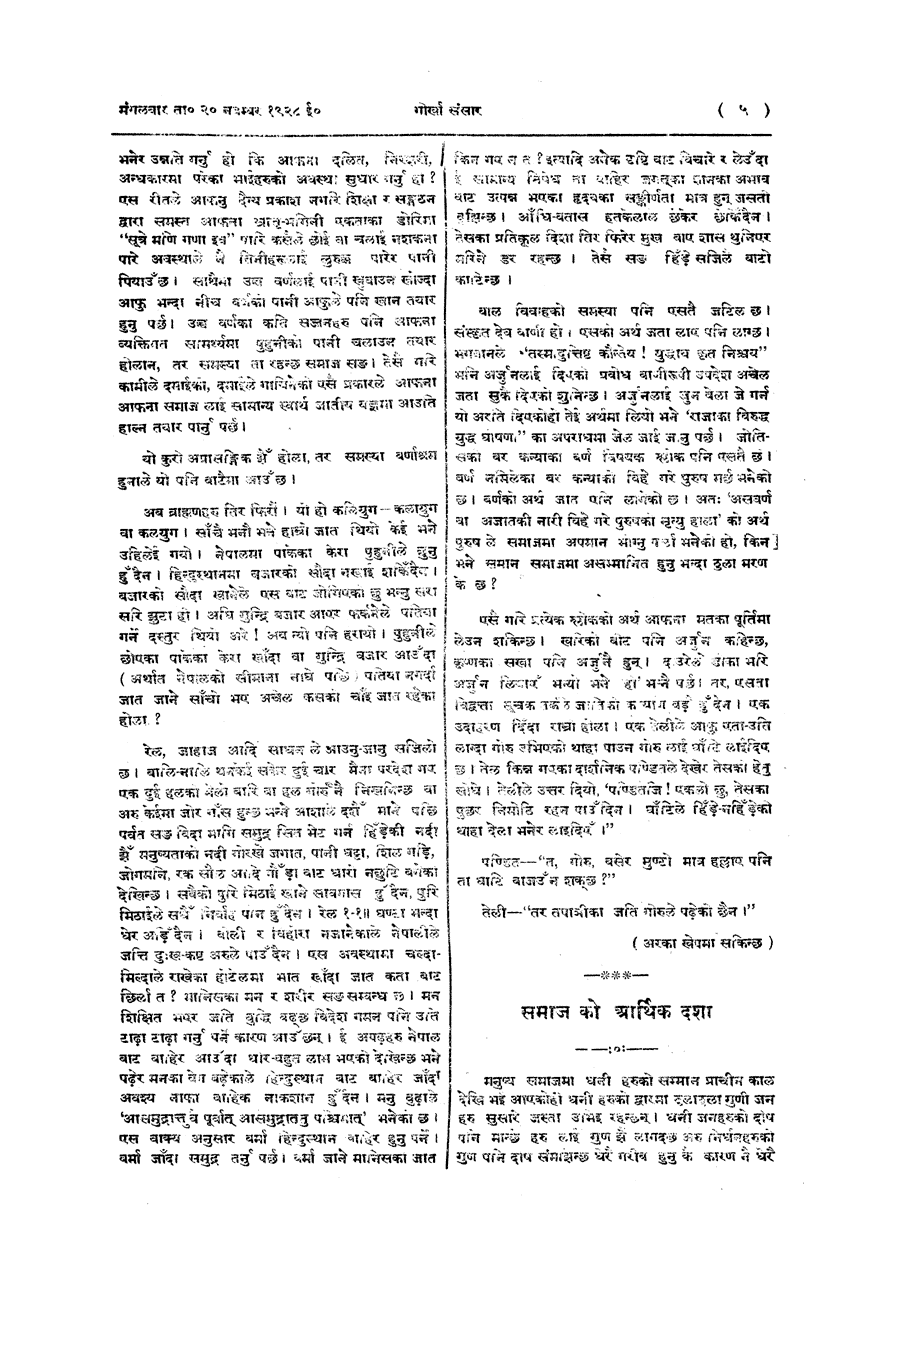 Gorkha Sansar, 20 Nov 1928, page 5